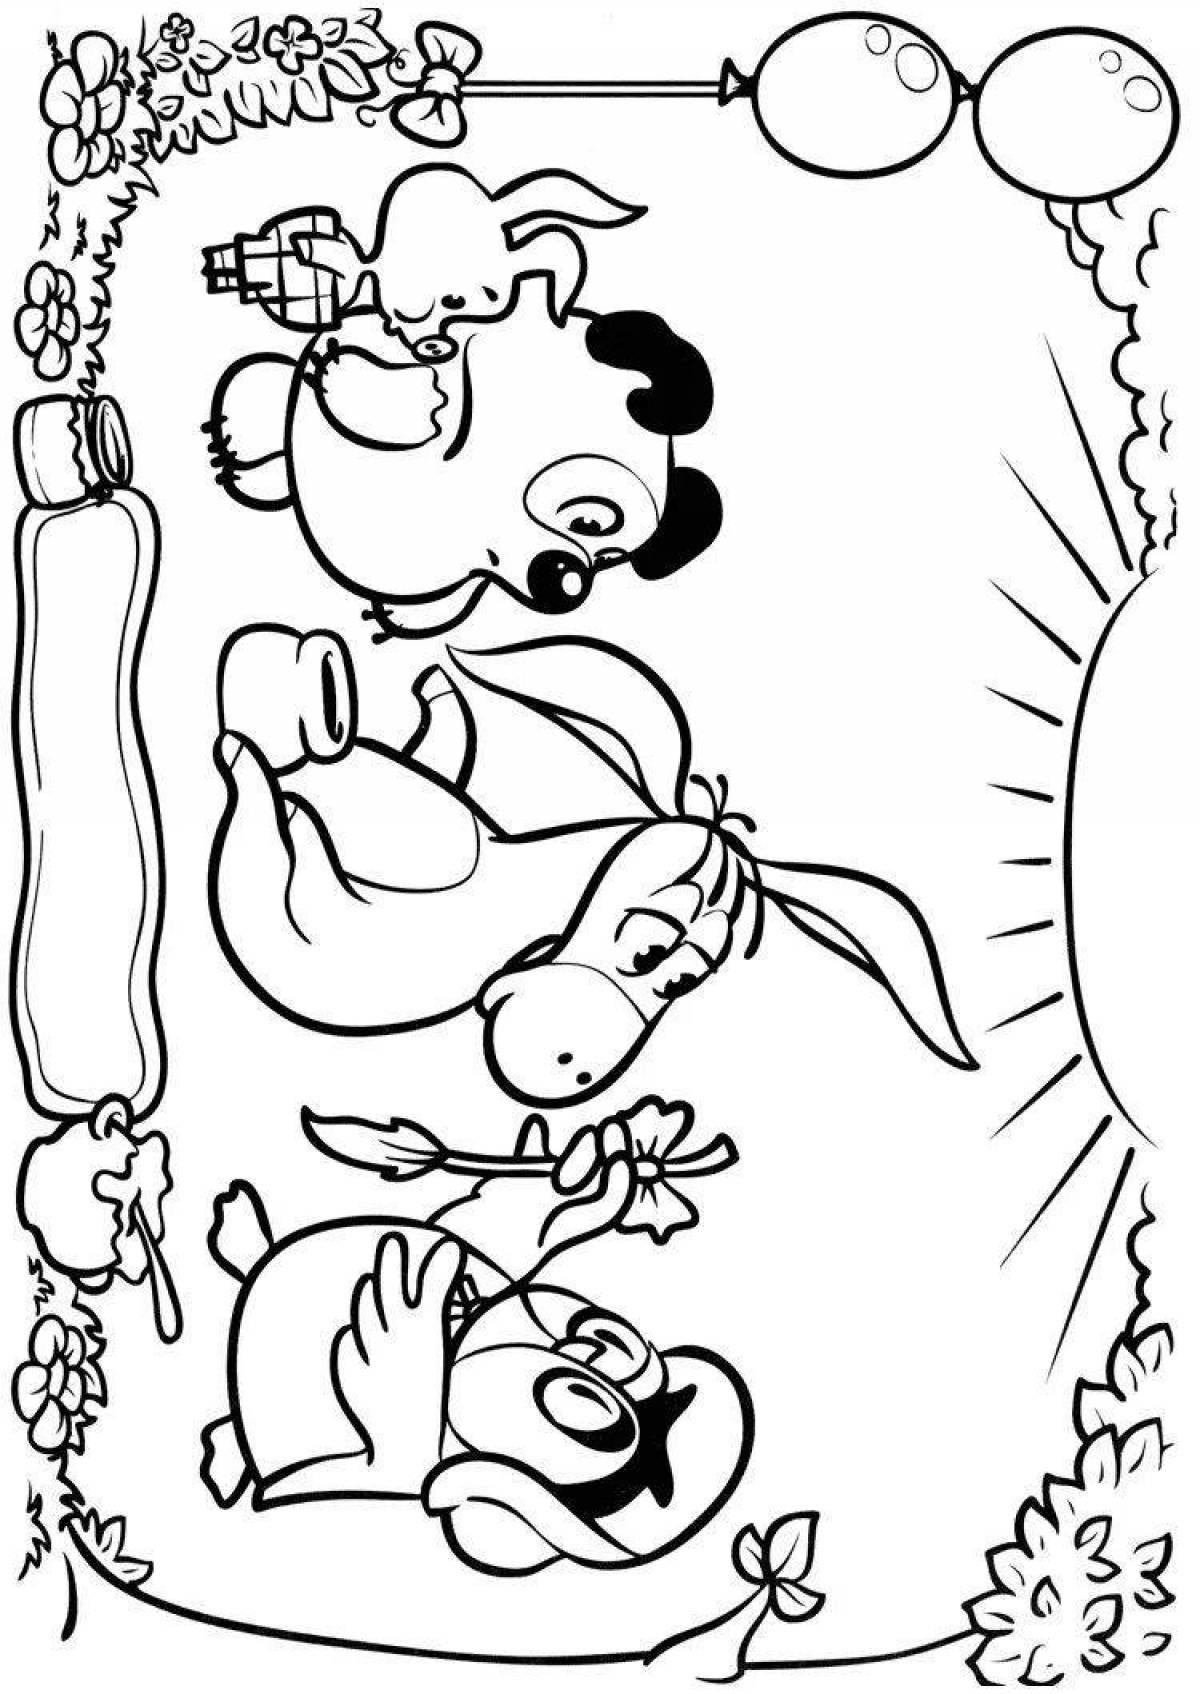 Лучезарная раскраска союзмультфильм винни-пух